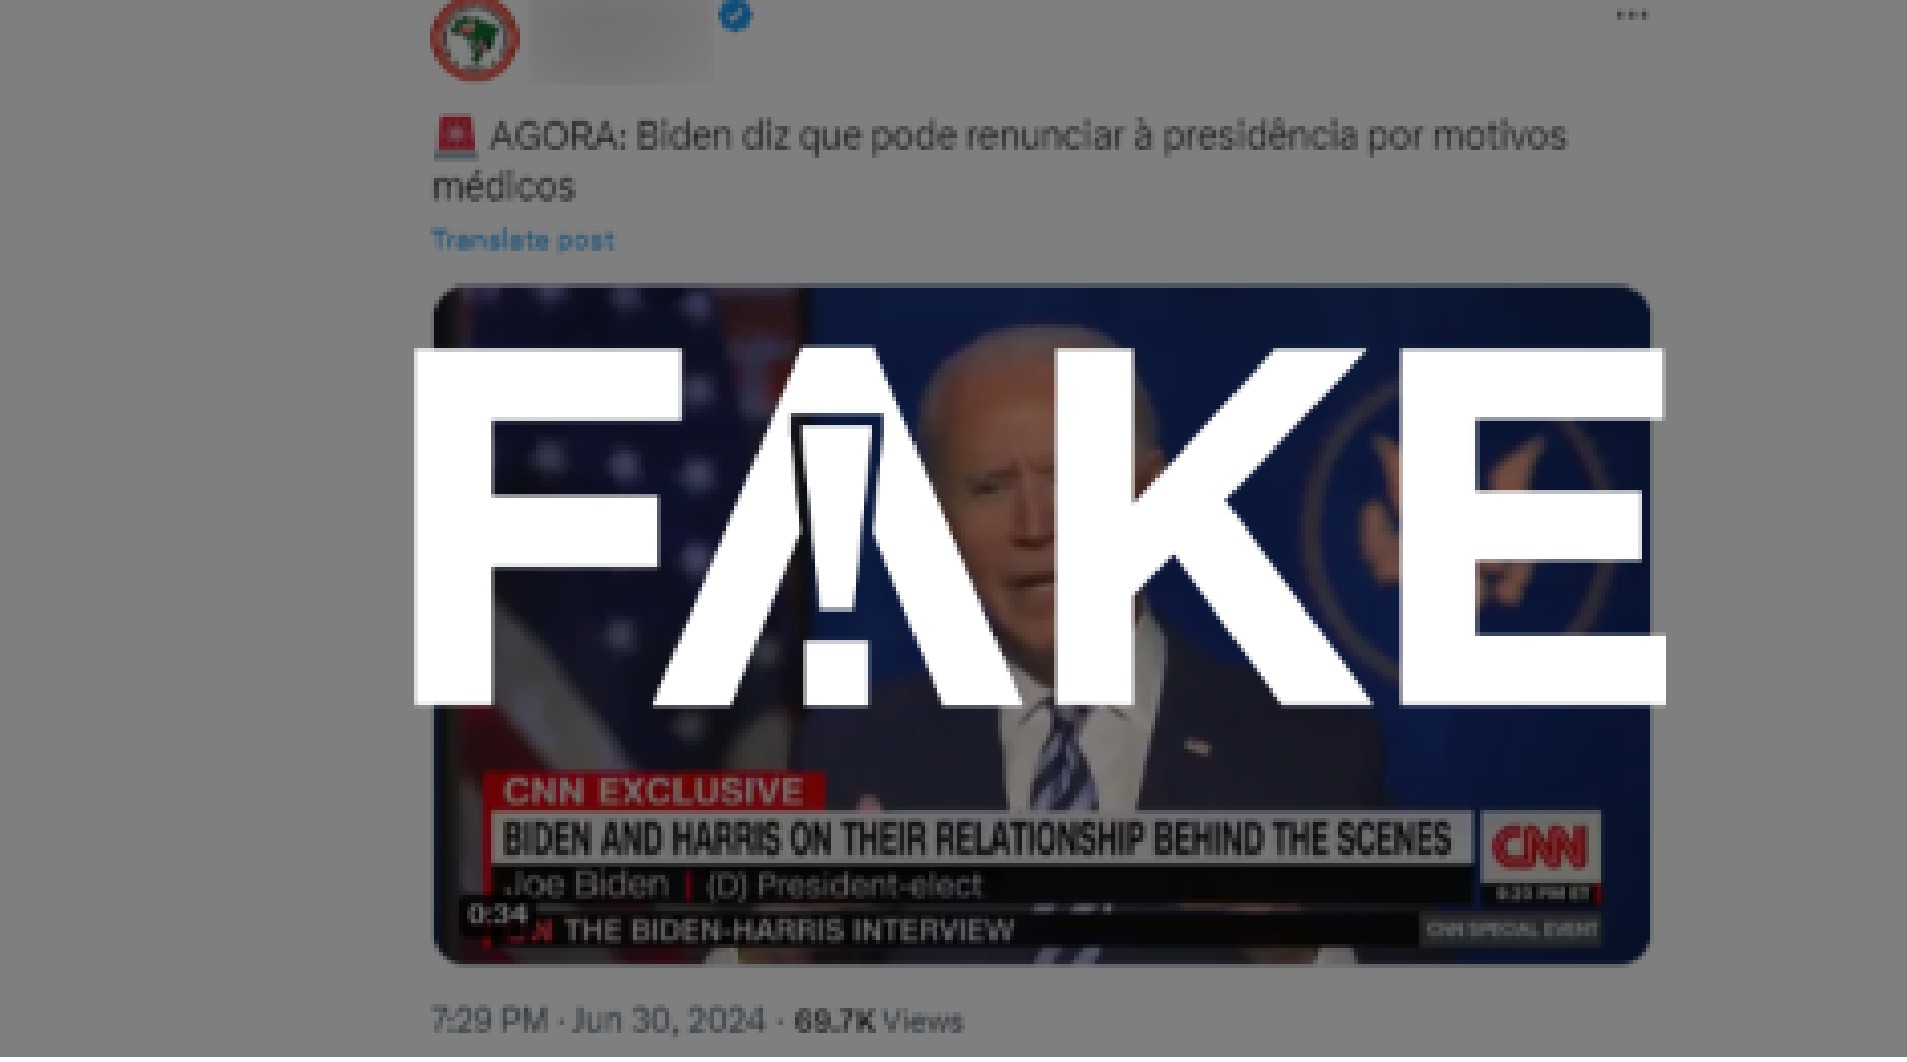 É #FAKE que Biden cogitou em vídeo renunciar à presidência dos EUA por questões médicas; fala é de 2020 e foi tirada de contexto